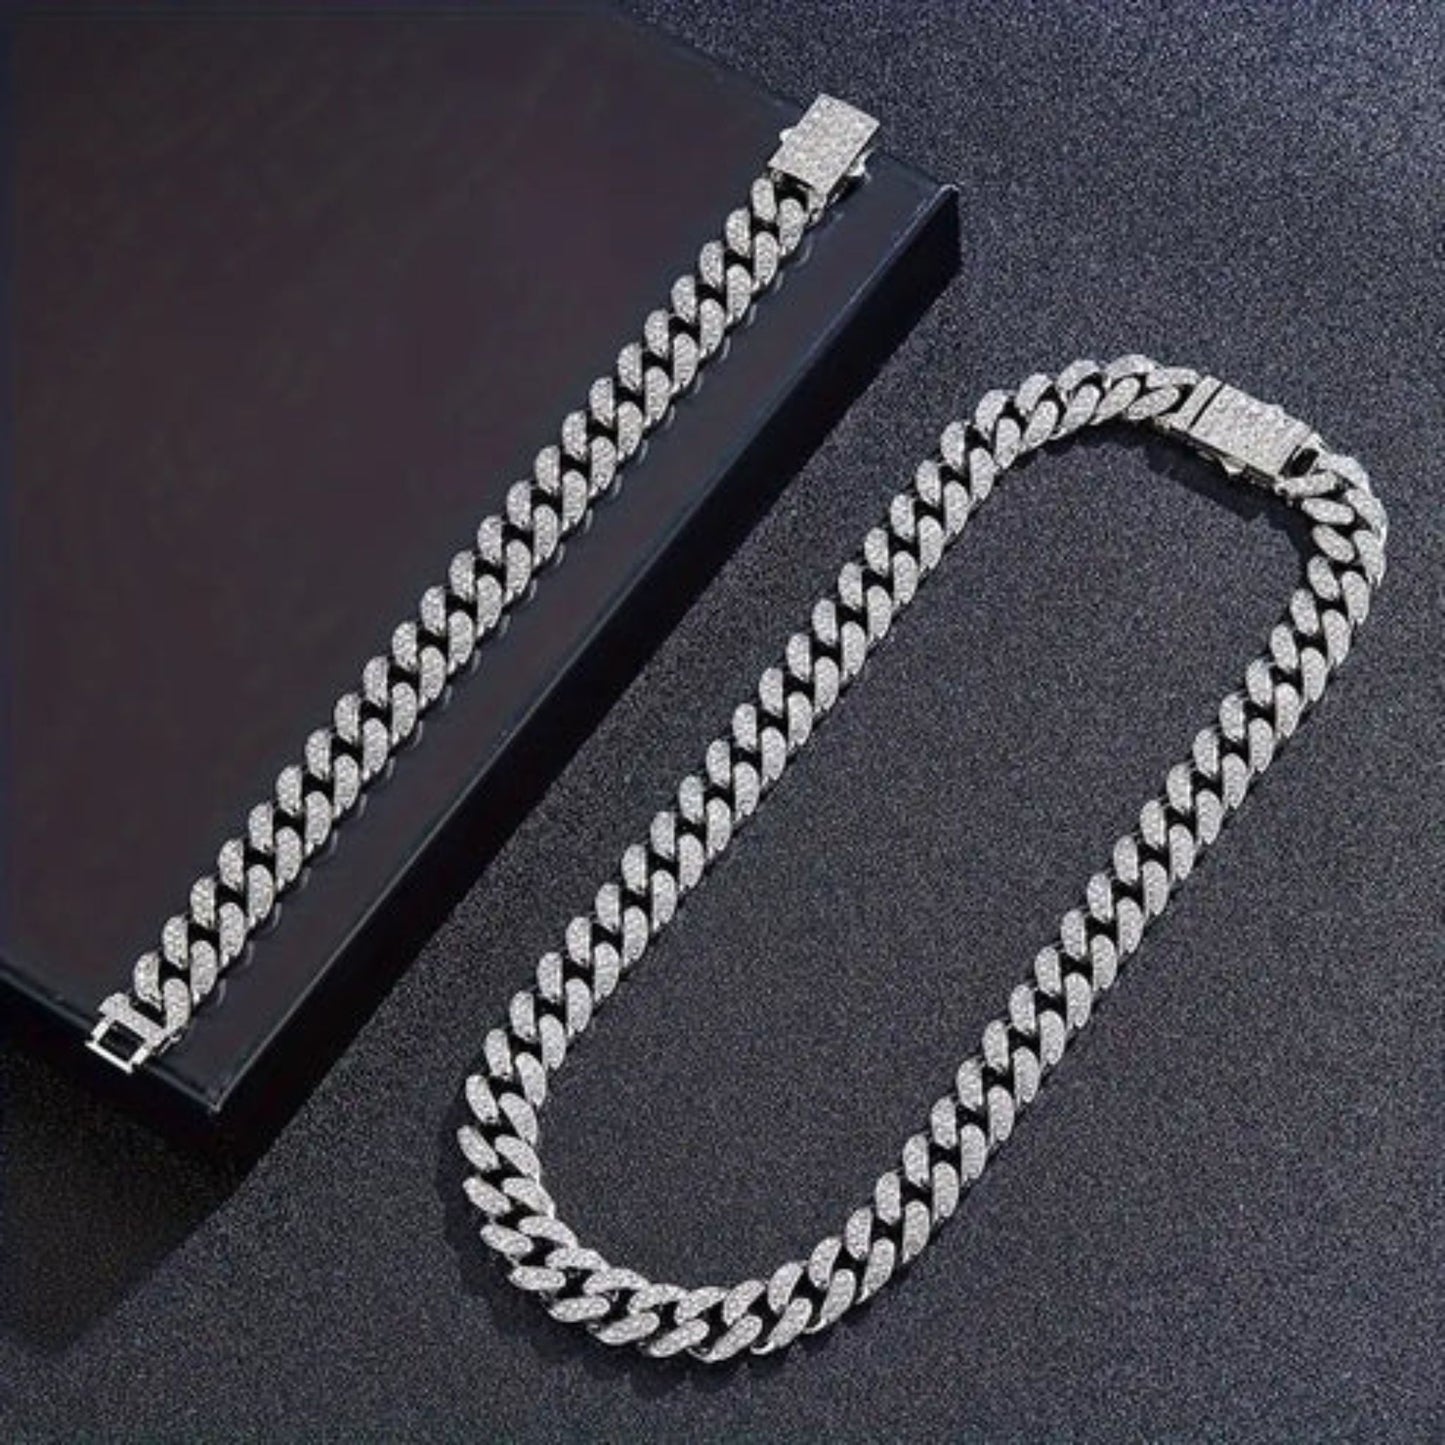 a shiny chain